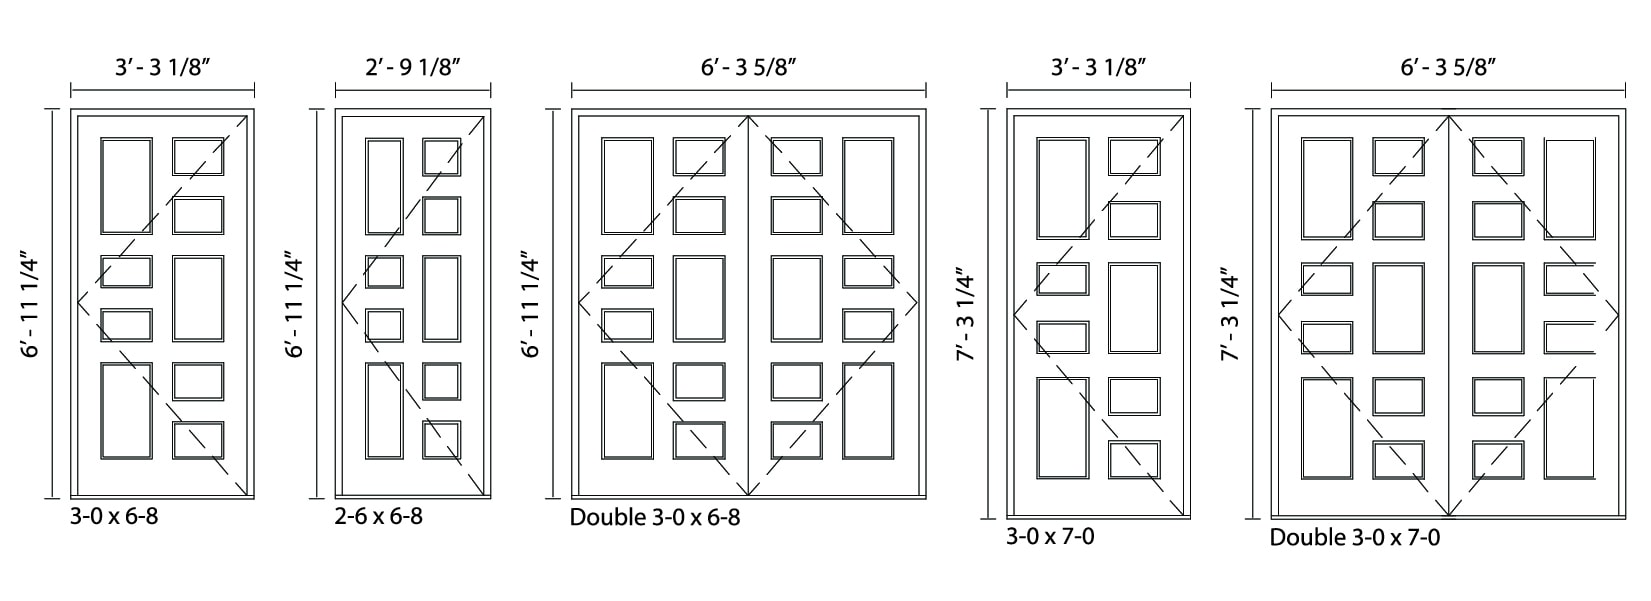 9-Panel Door - Deck House Windows and Doors